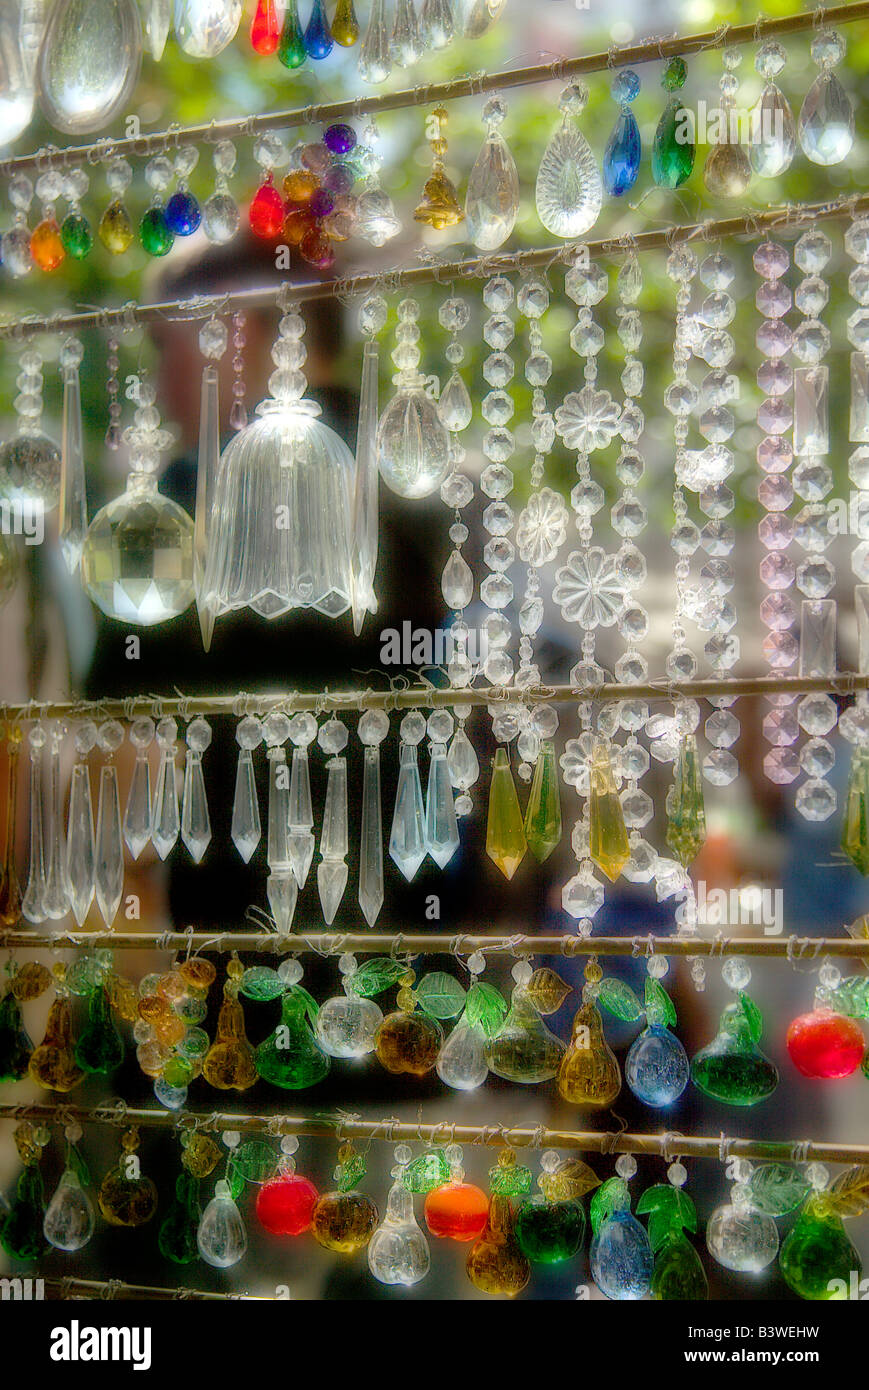 L'Amérique du Sud, Argentine, Buenos Aires. Un Orton-style impressionniste image de cristaux de verre affiche dans un marché en plein air. Banque D'Images